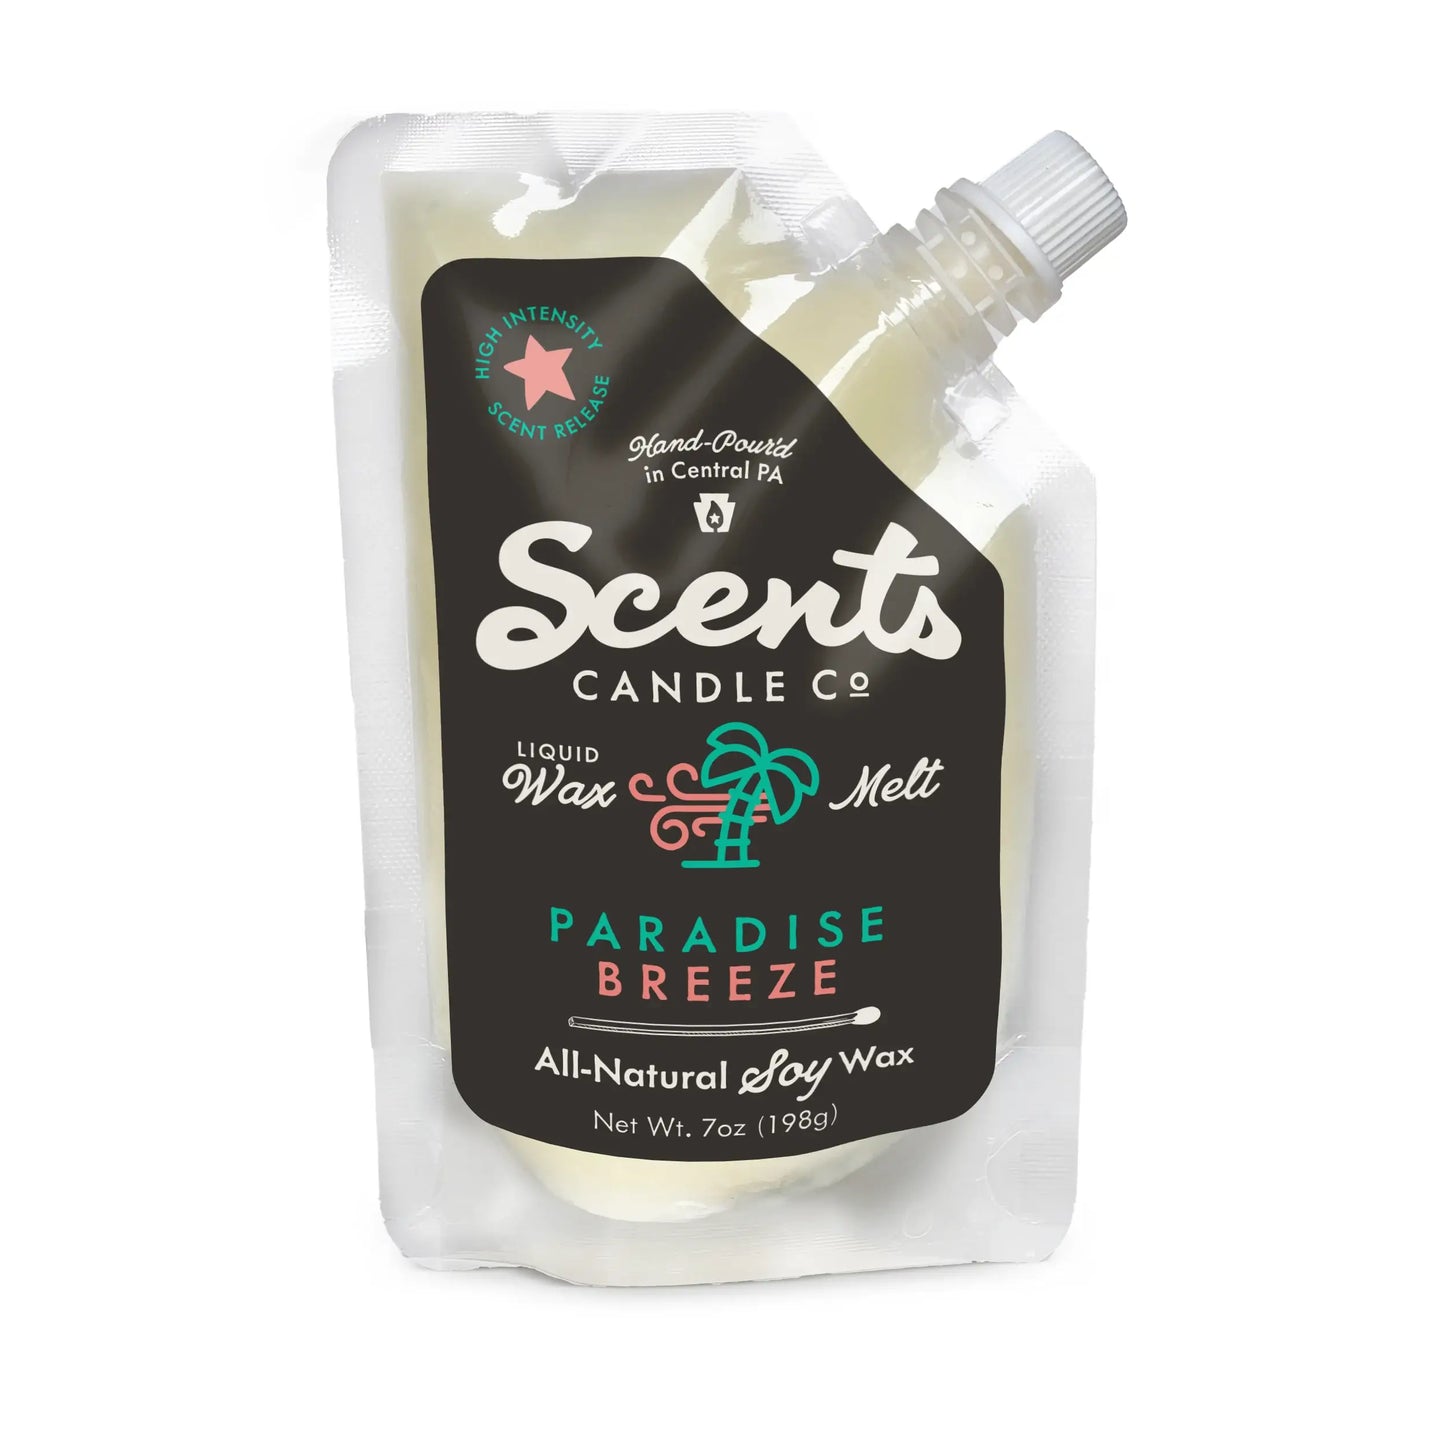 Scents Candle Co. Paradise Breeze Liquid Wax Melt